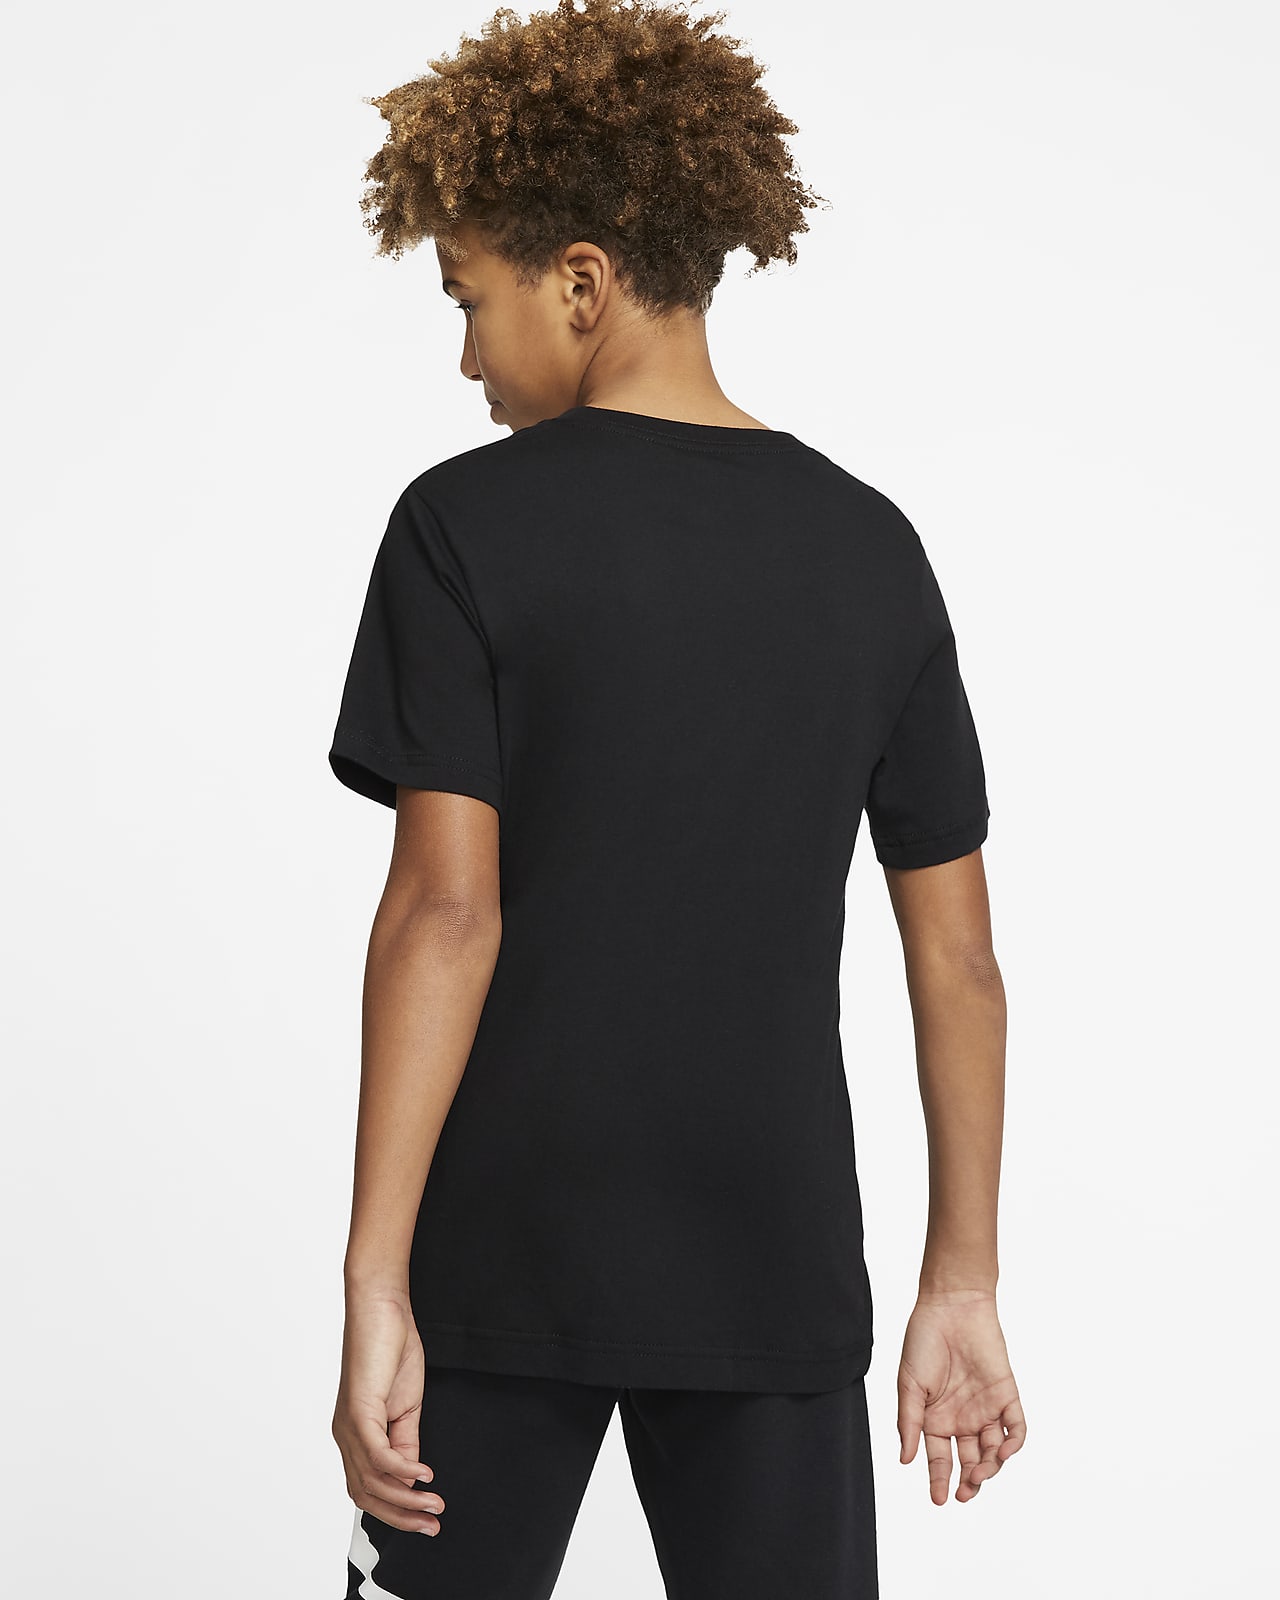 Nike Jordan Boys' Toddler Air Jumpman T-shirt In Black